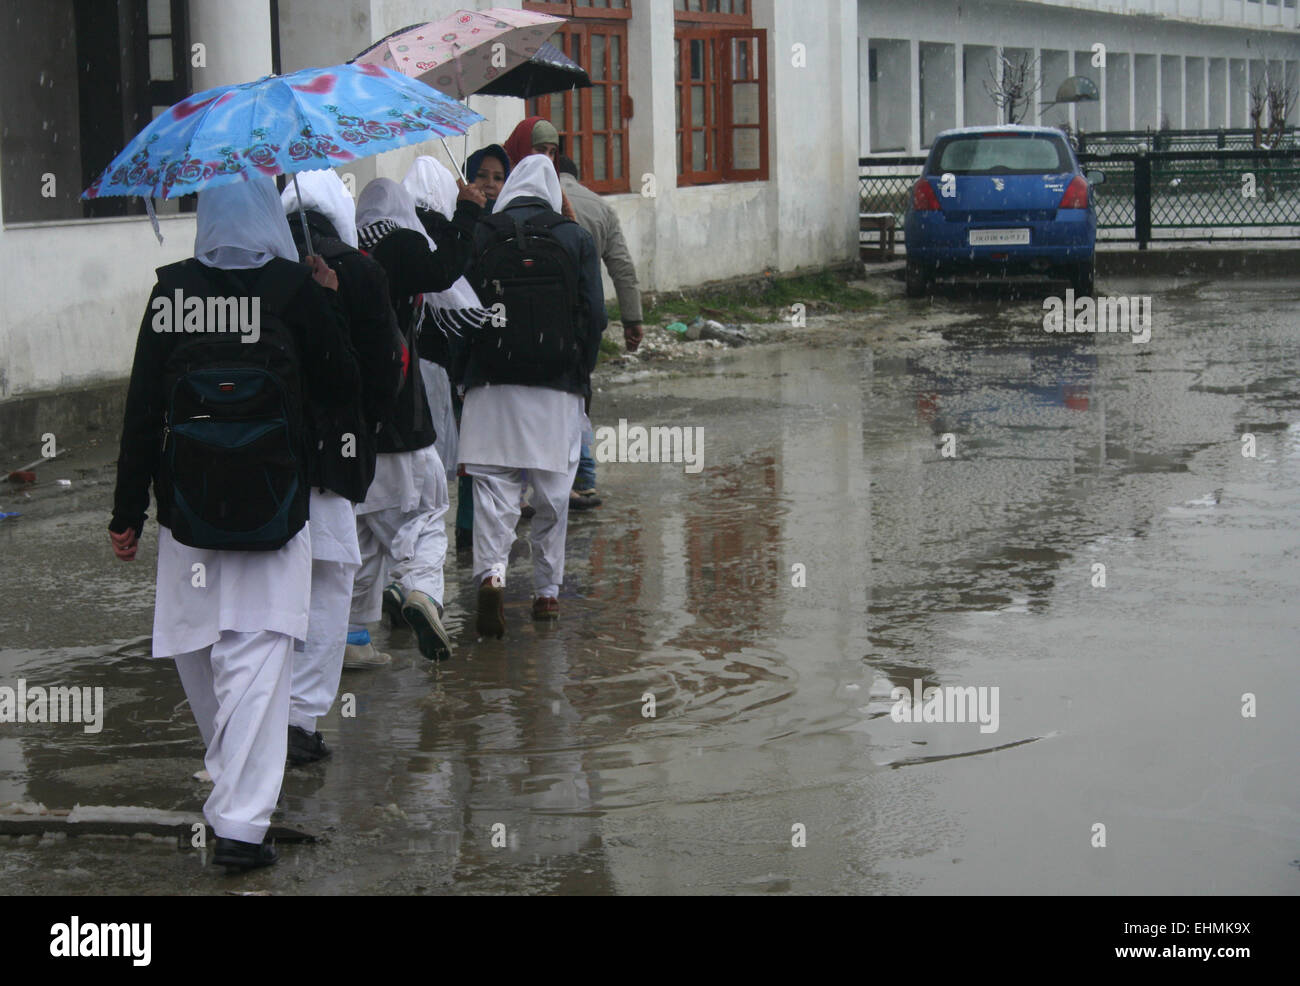 Srinagar, indische verabreicht Kaschmir. 16. März 2015. Kaschmir-Wetter: Studenten Rückgabewert zurück Wetter ihre Häuser bei frischem Regen und Schneefall gestört normales Leben ...die abrupte Veränderung führte zu einen plötzlichen Abfall der Temperatur. Wetterfrösche zurückzuführen den frischen Niederschlag auf westliche Störung. Sie haben ähnliche Wetterbedingungen für die nächsten 24 Stunden in Kaschmir und in Nachbarstaaten vorausgesagt. Der Schneefall hat auch normales Leben aus Getriebe mit Bildungseinrichtungen, die verbleibenden geschlossenen geworfen. Die meisten von den Straßen der Stadt waren naß. Bildnachweis: Sofi Suhail/Alamy Live-Nachrichten Stockfoto